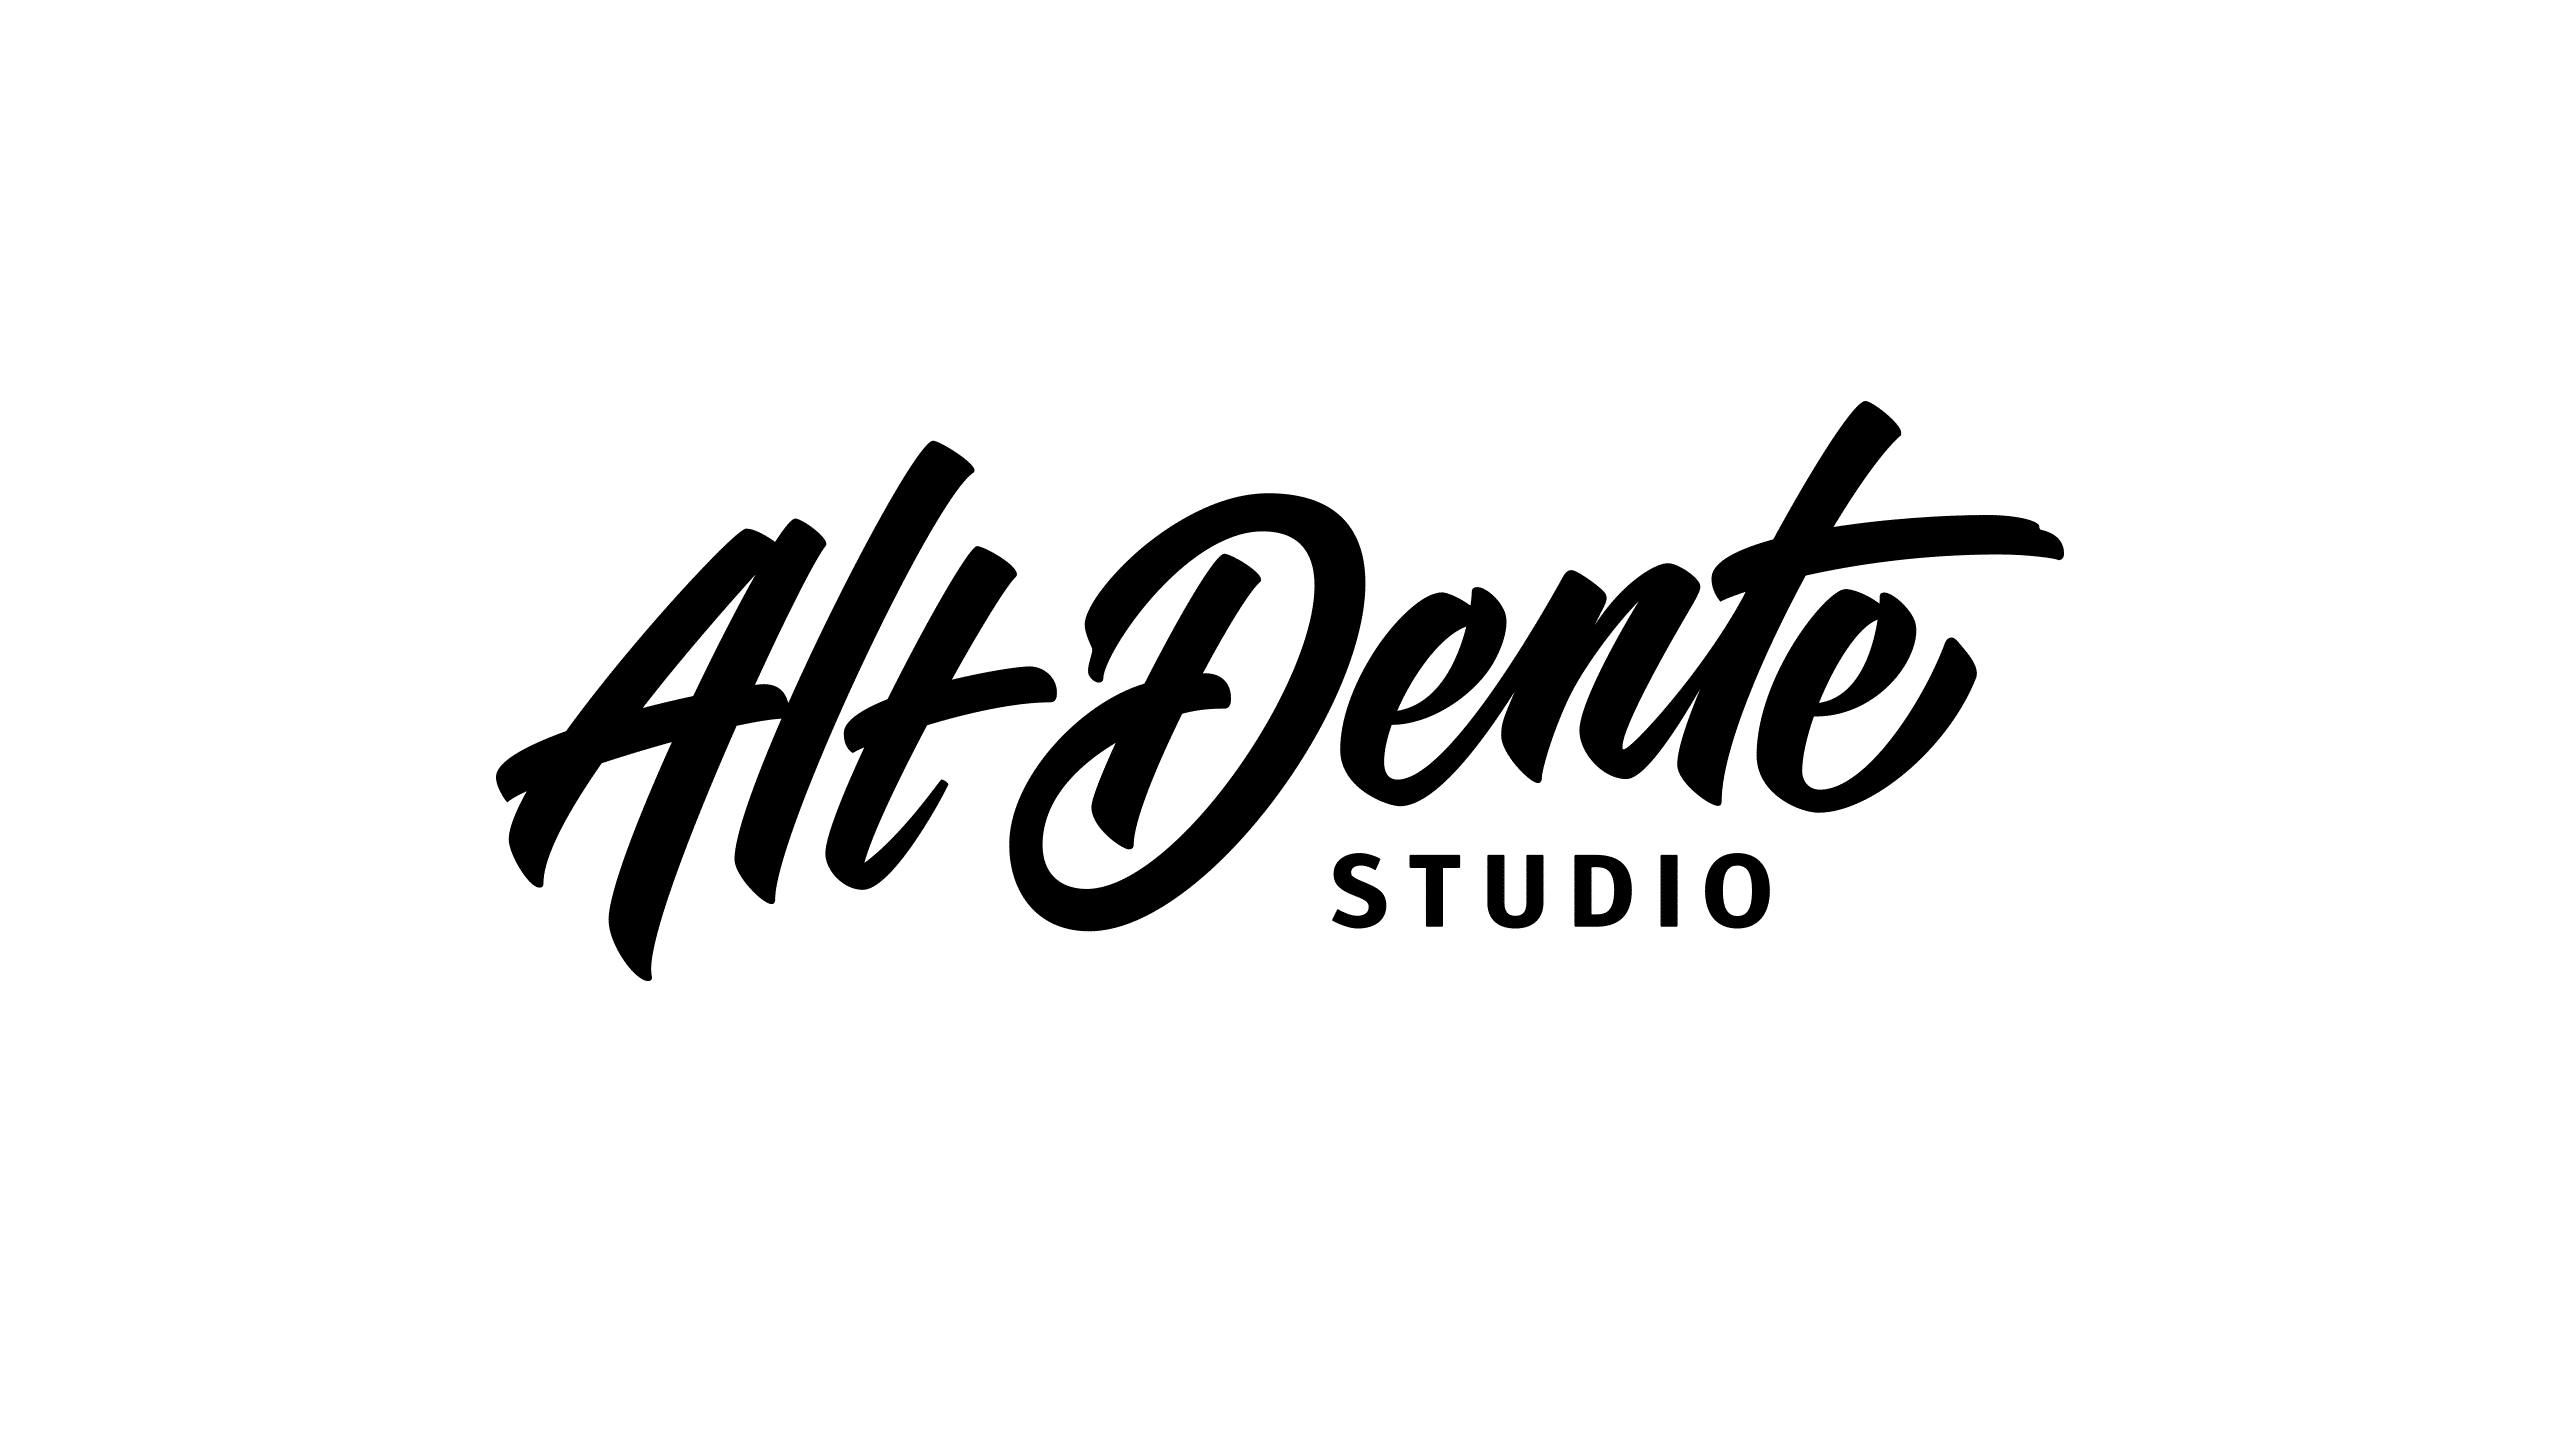 Final logo design for Alt Dente Studio